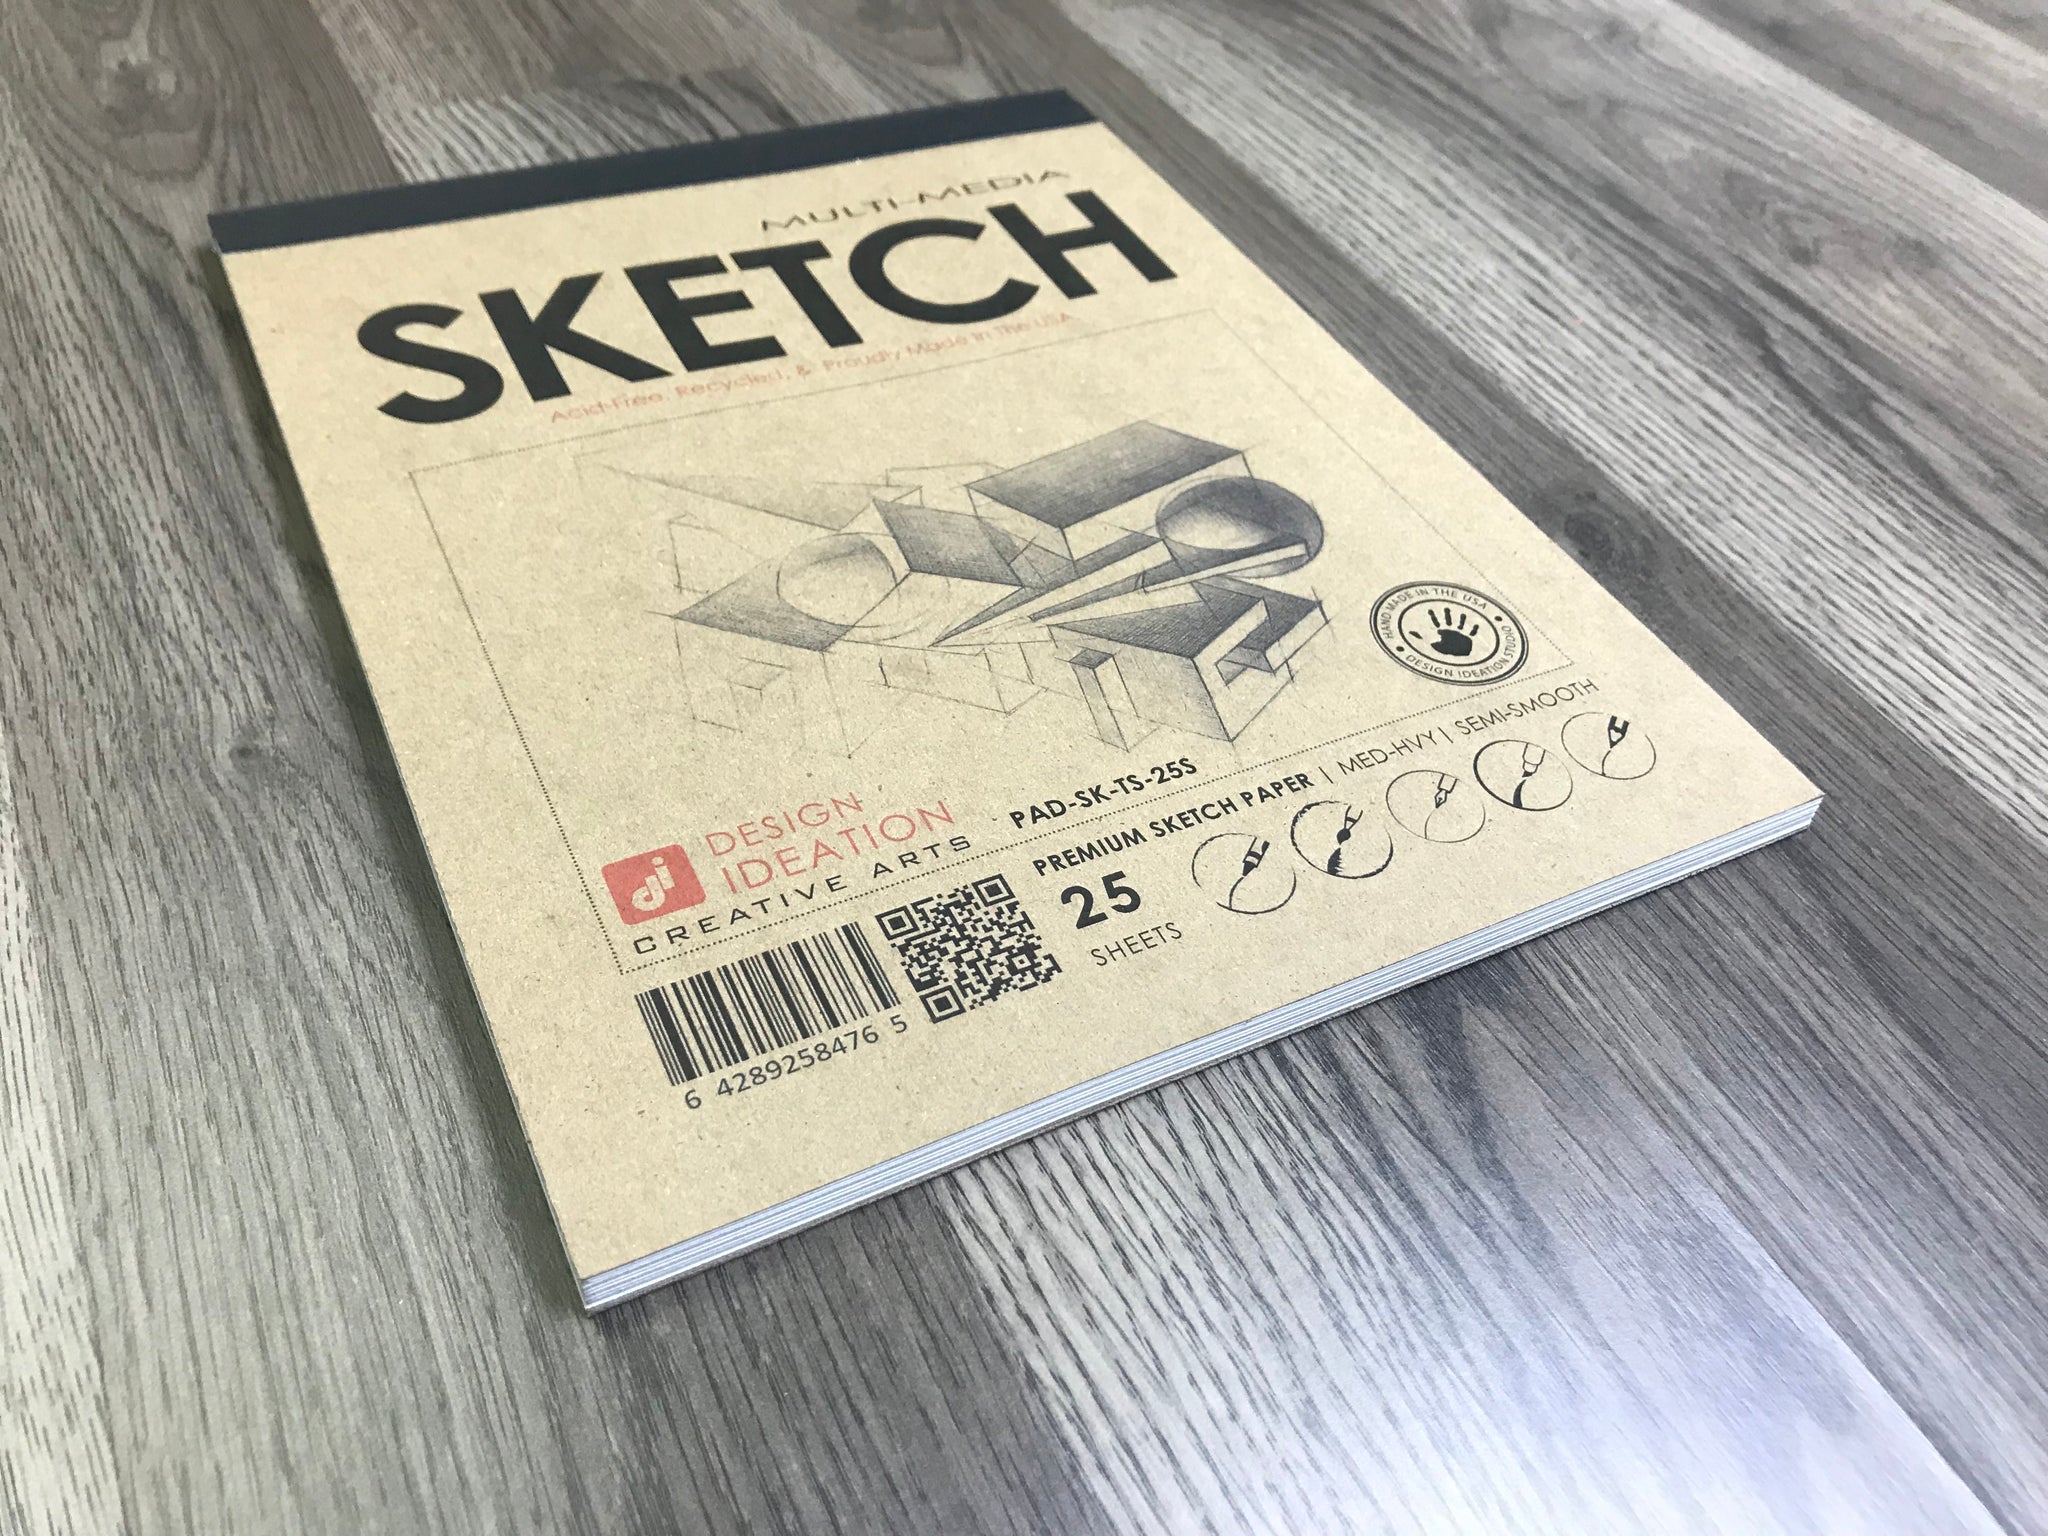 Berkeley Sketch Pad / Drawing Pad / Sketchpad